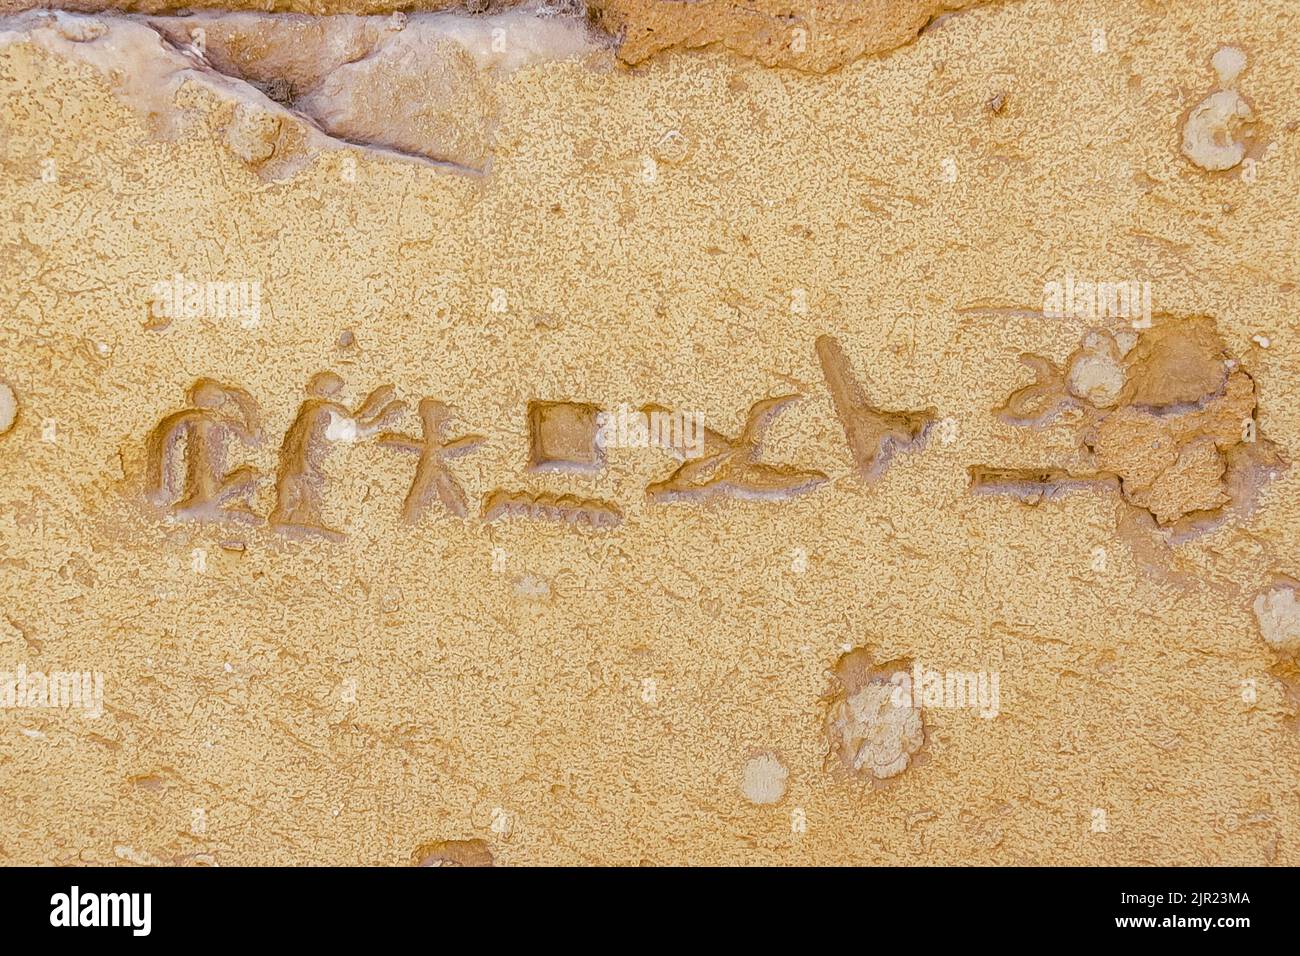 Egypte, Saqqara vicino al Cairo, tomba del nuovo Regno di Horemheb, graffito sul secondo pilone : lo scultore Pendua. Foto Stock